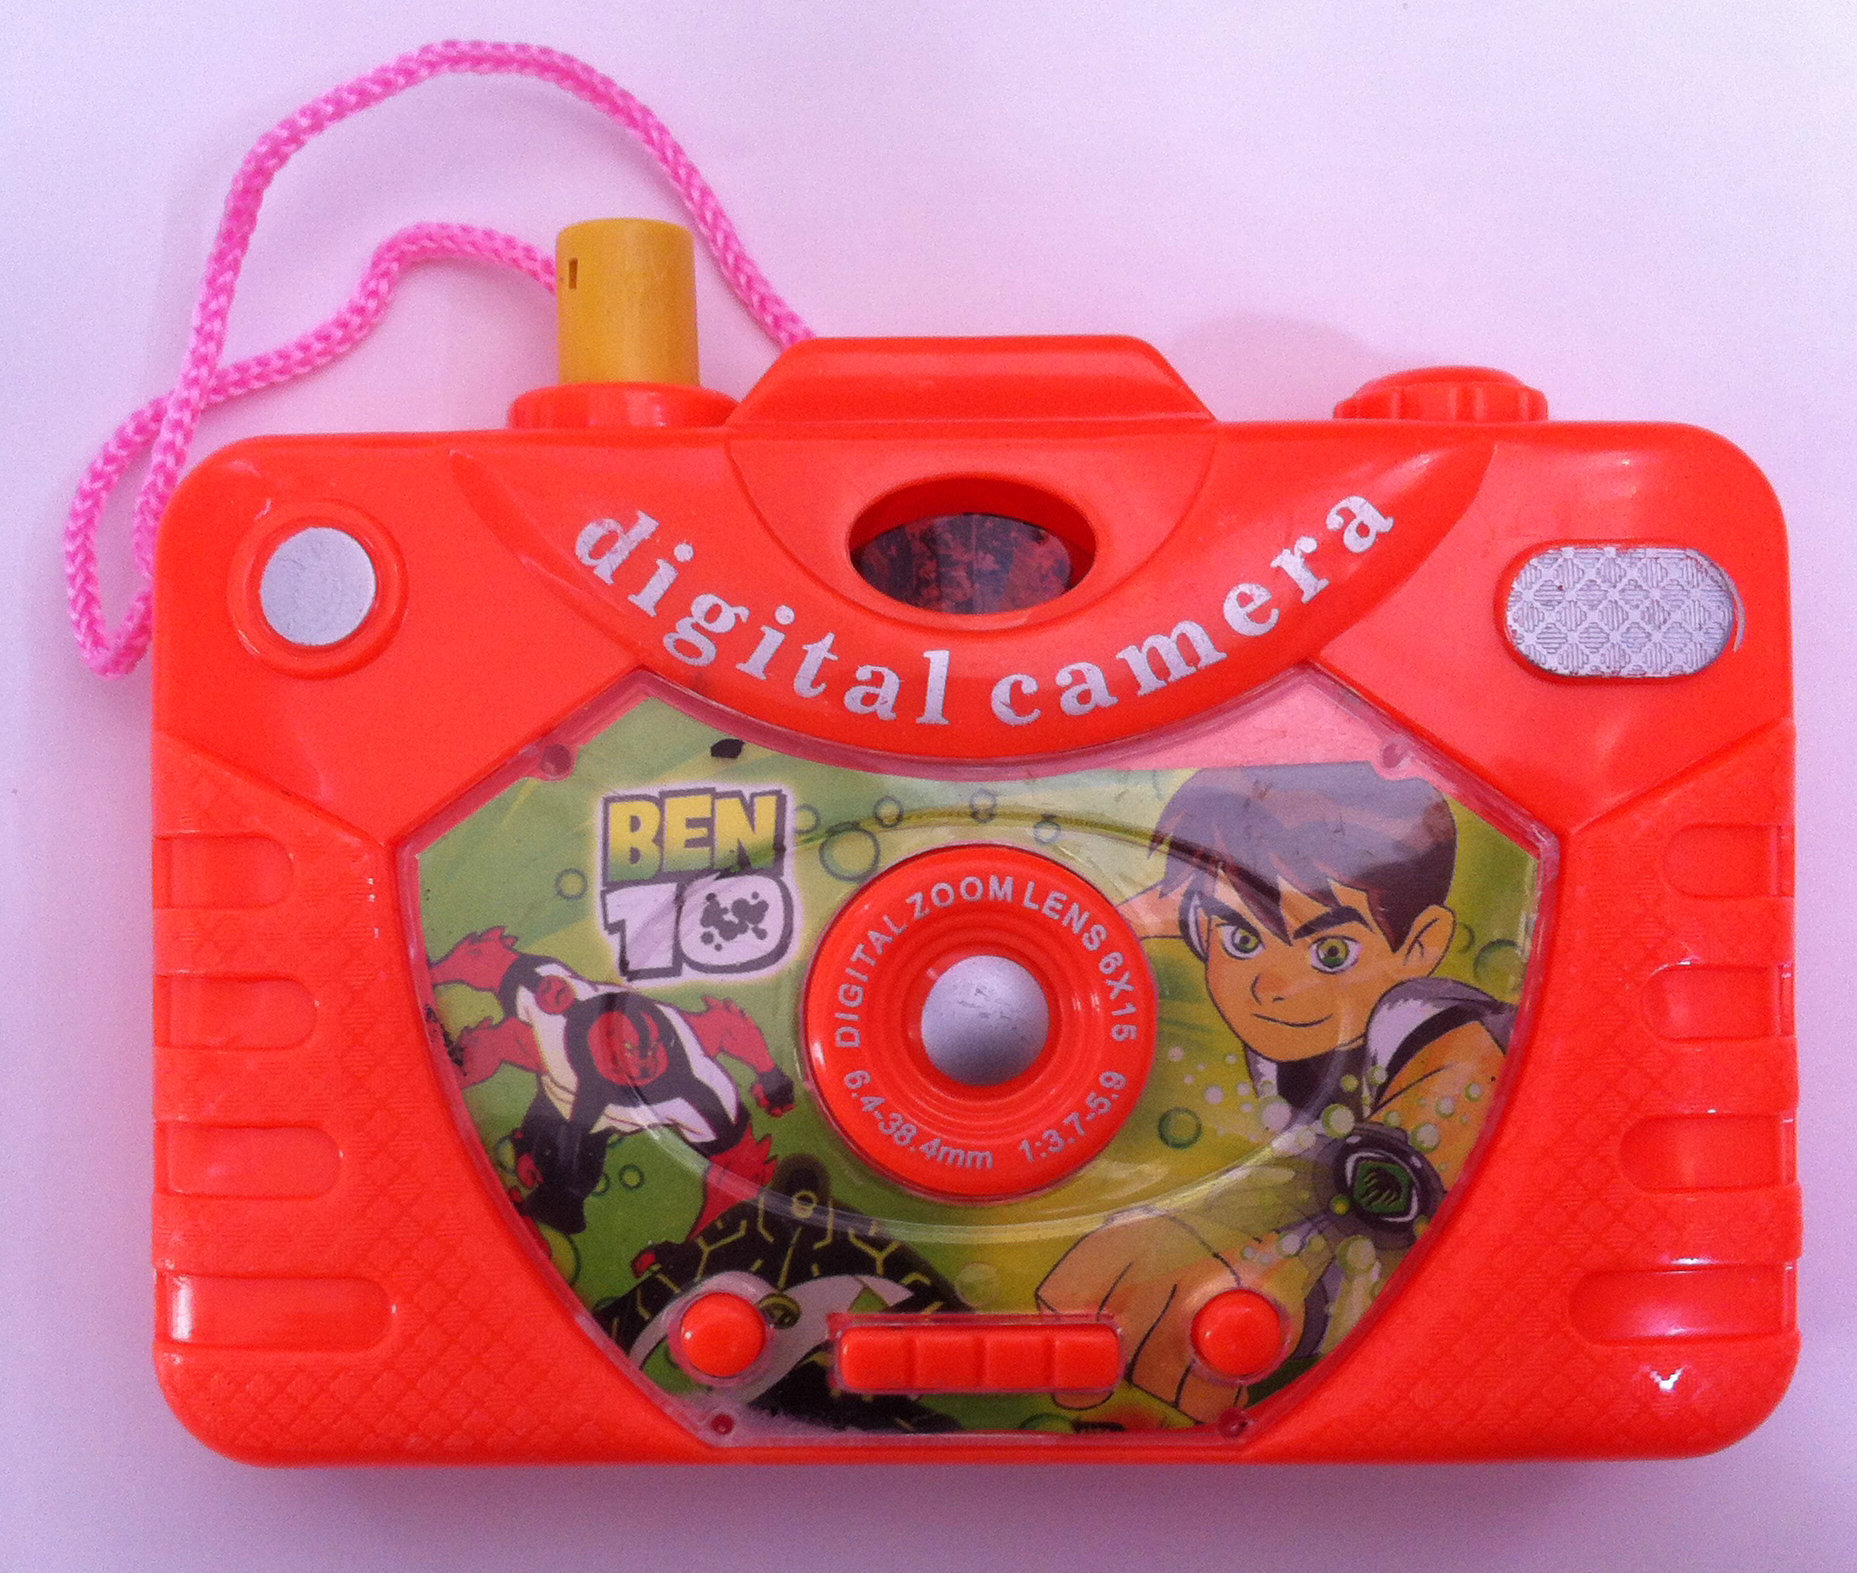 新款2元玩具 儿童万象照相机玩具 地摊热销玩